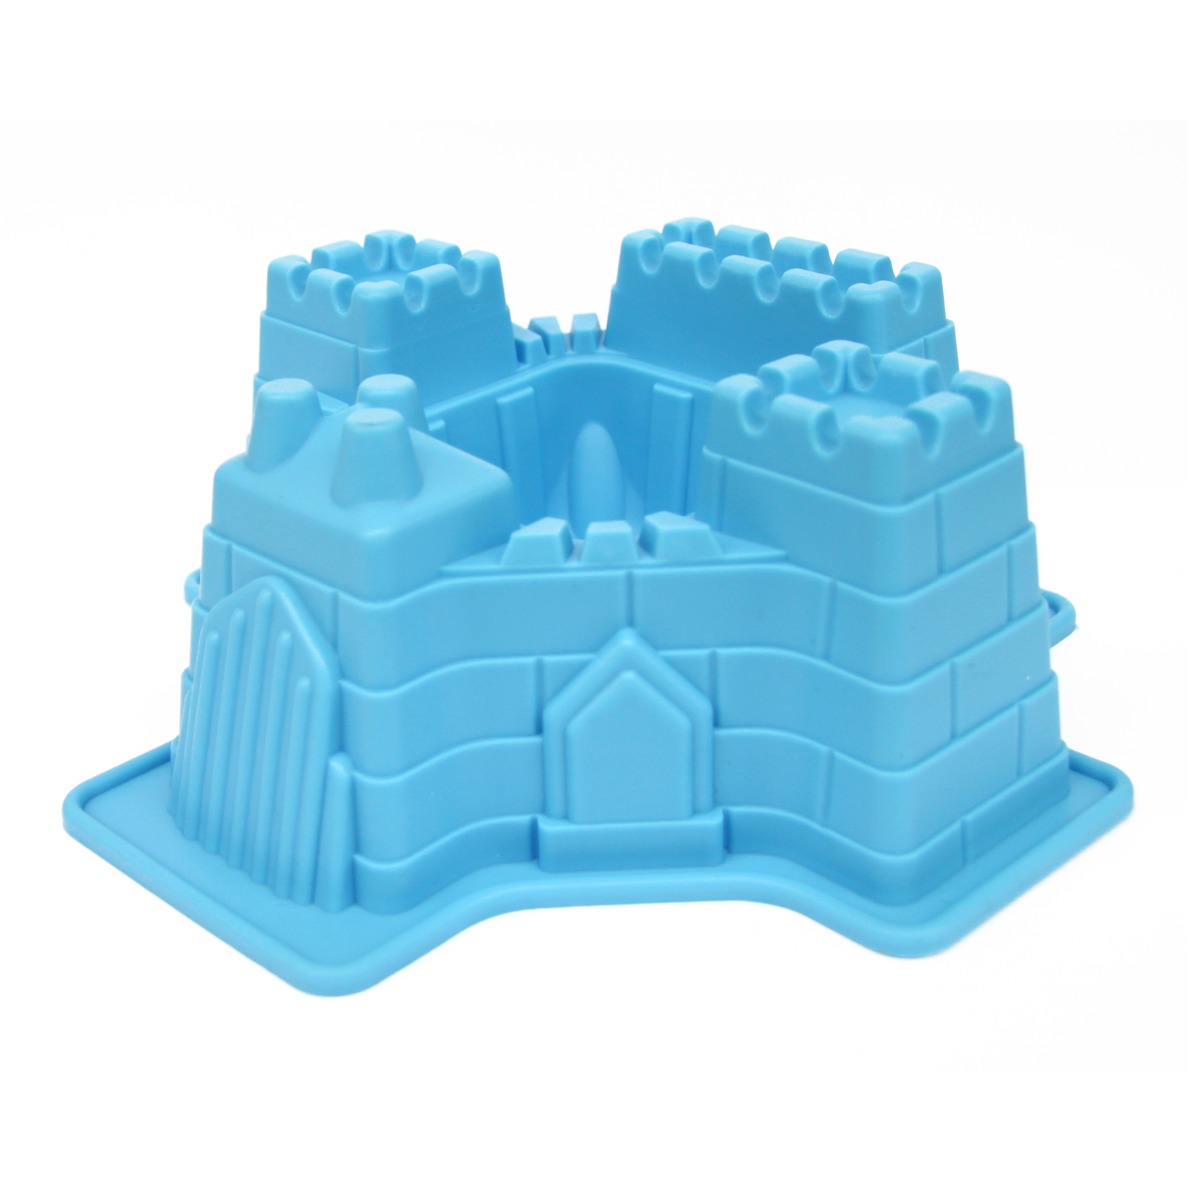 Moule à gâteau en forme de château fort - Antiadhésif - 21 x 20 x 8 cm - Bleu